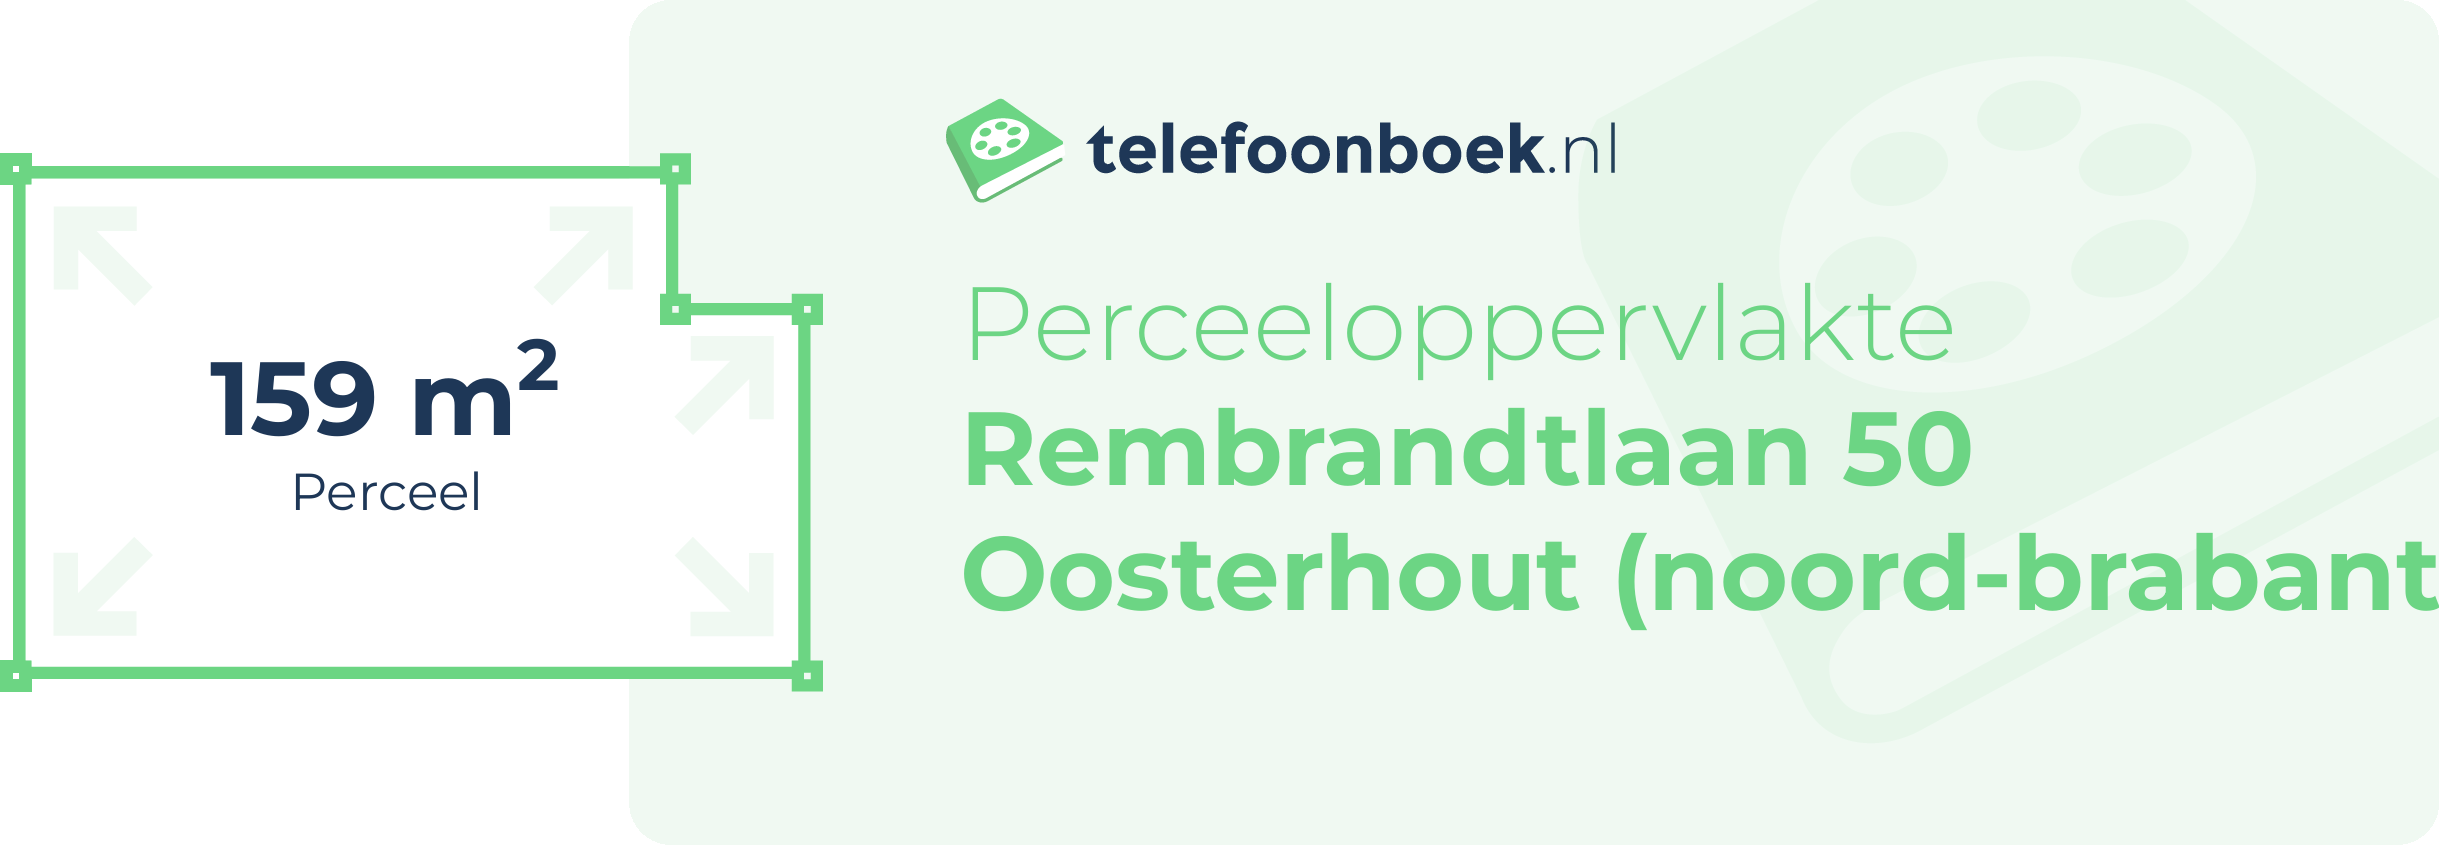 Perceeloppervlakte Rembrandtlaan 50 Oosterhout (Noord-Brabant)